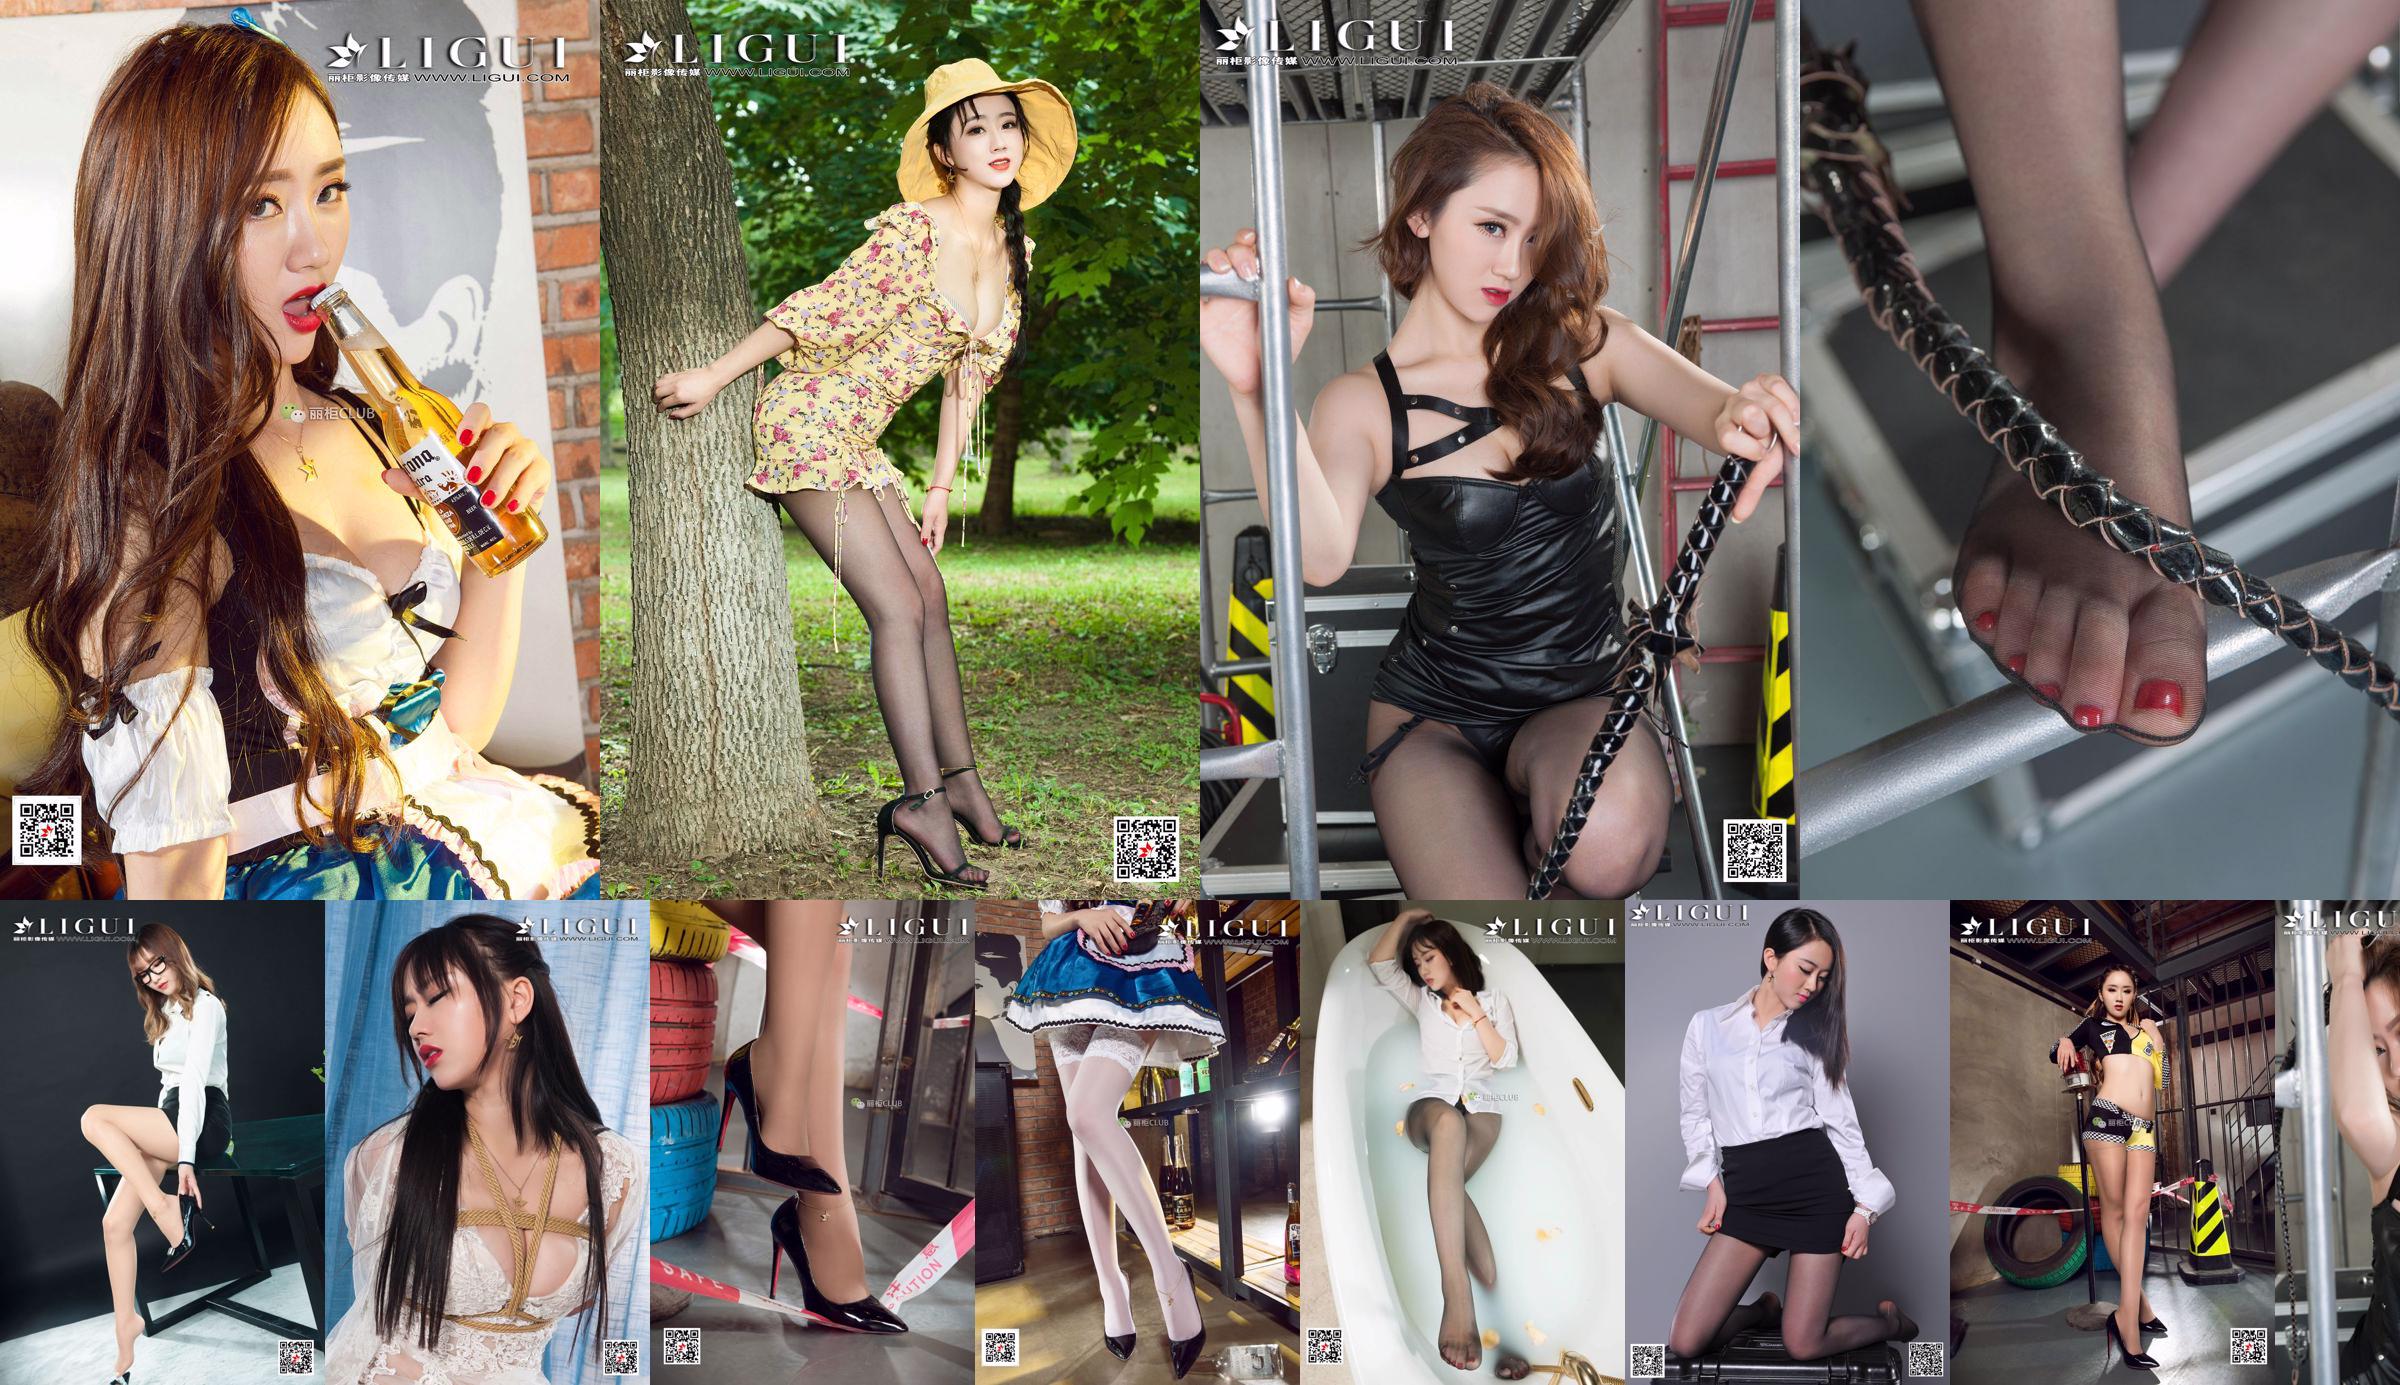 Modelle Ranran e Wen Rui "La tentazione delle ragazze della scuola gemella con i piedi di seta" [Ligui Ligui] No.af1de0 Pagina 24